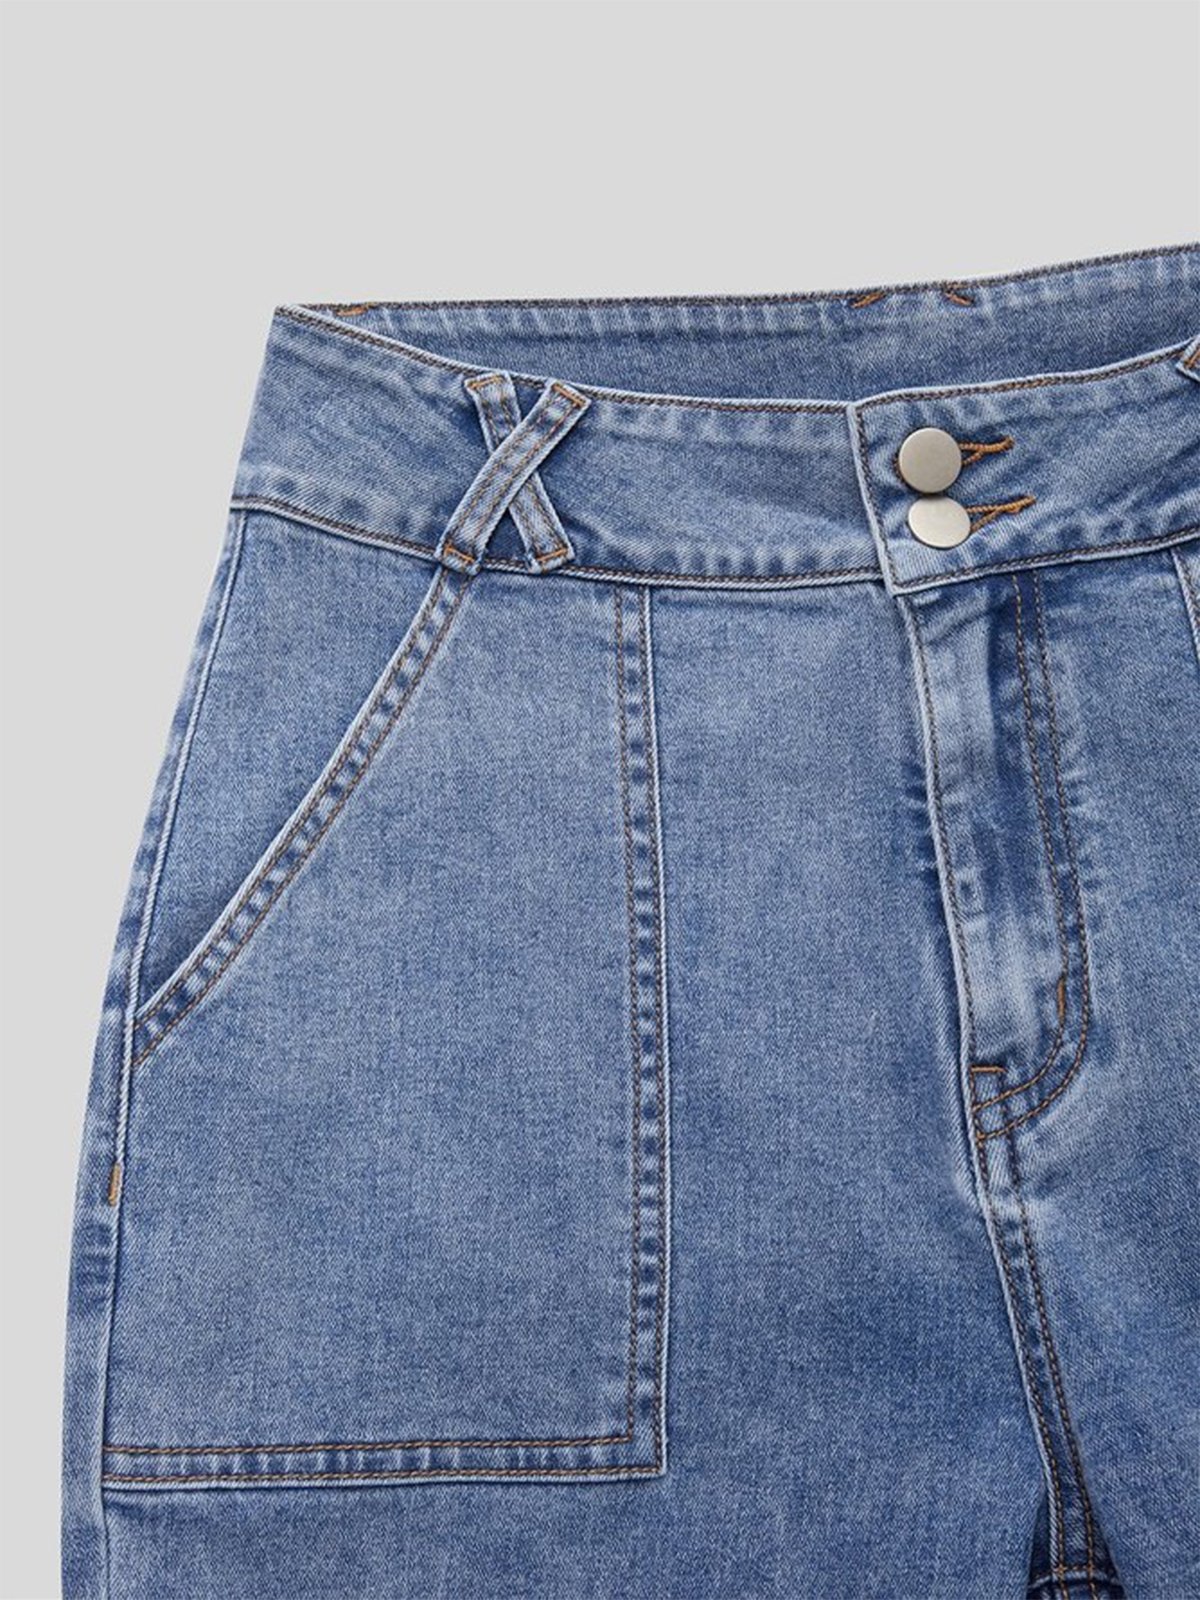 Jeans Femmes Décontracté Plain Printemps / Automne Naturel Pantalon à la cheville Toile de Jean Droit Régulier Élasticité moyenne